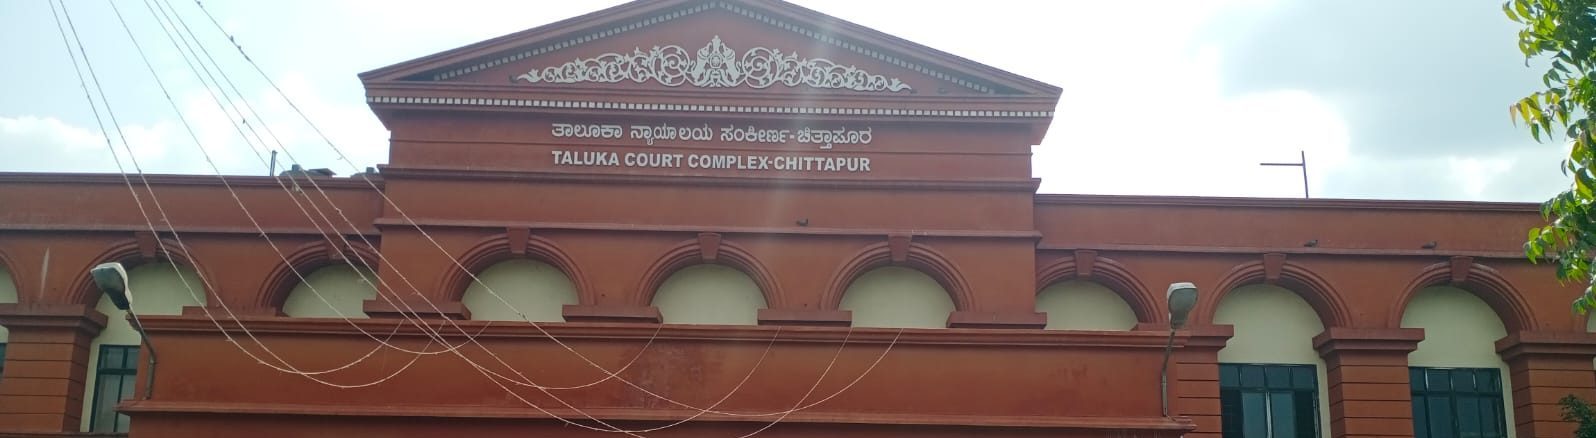 Chittapur Court Complex